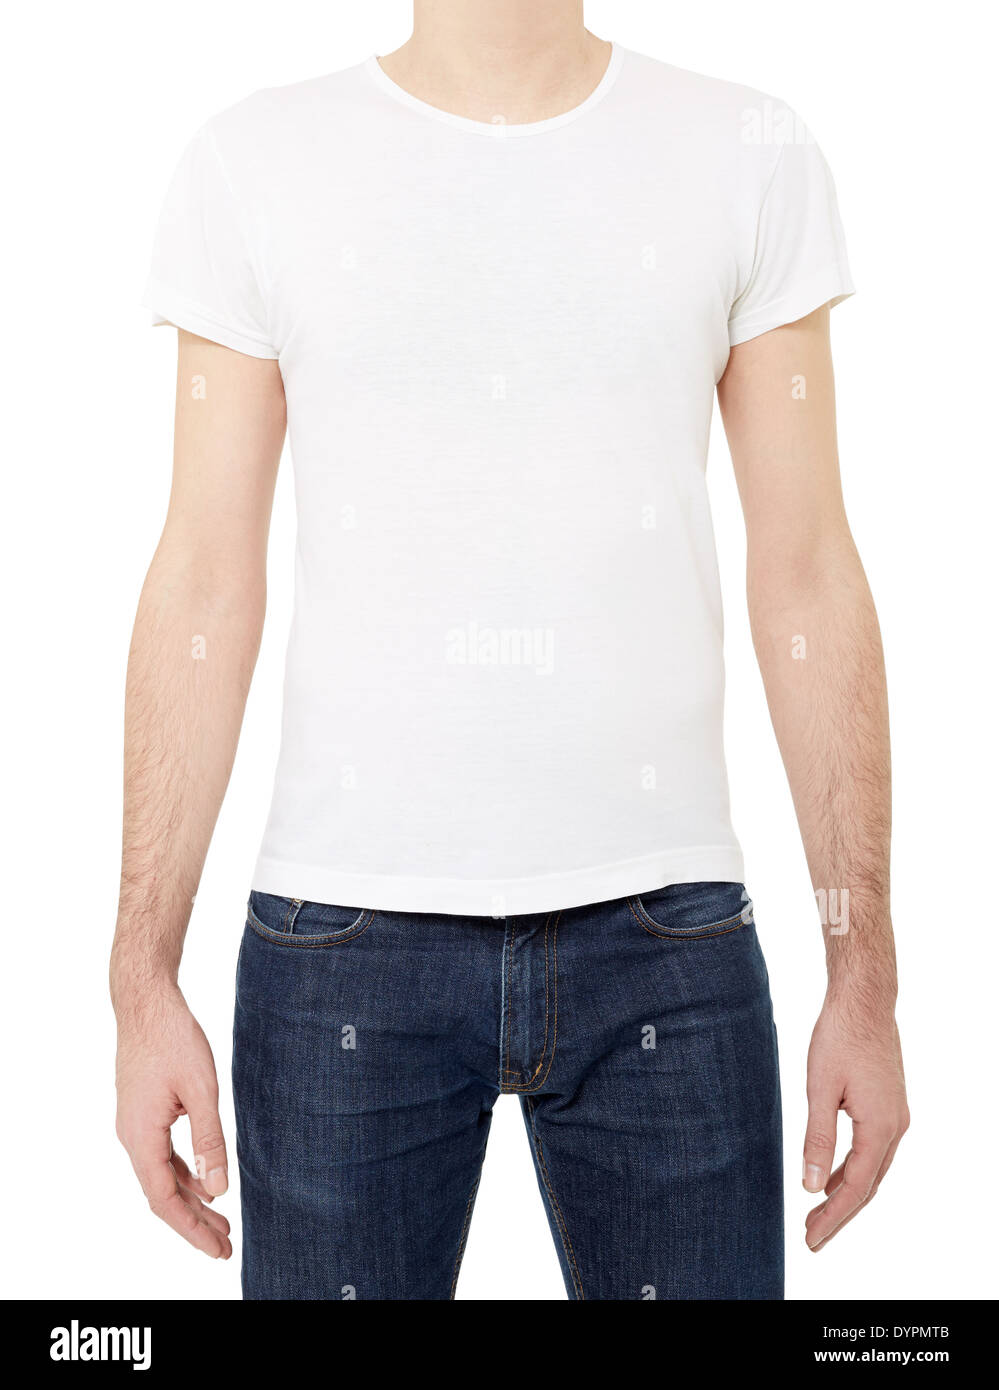 Hombre vestido con camiseta blanca Foto de stock